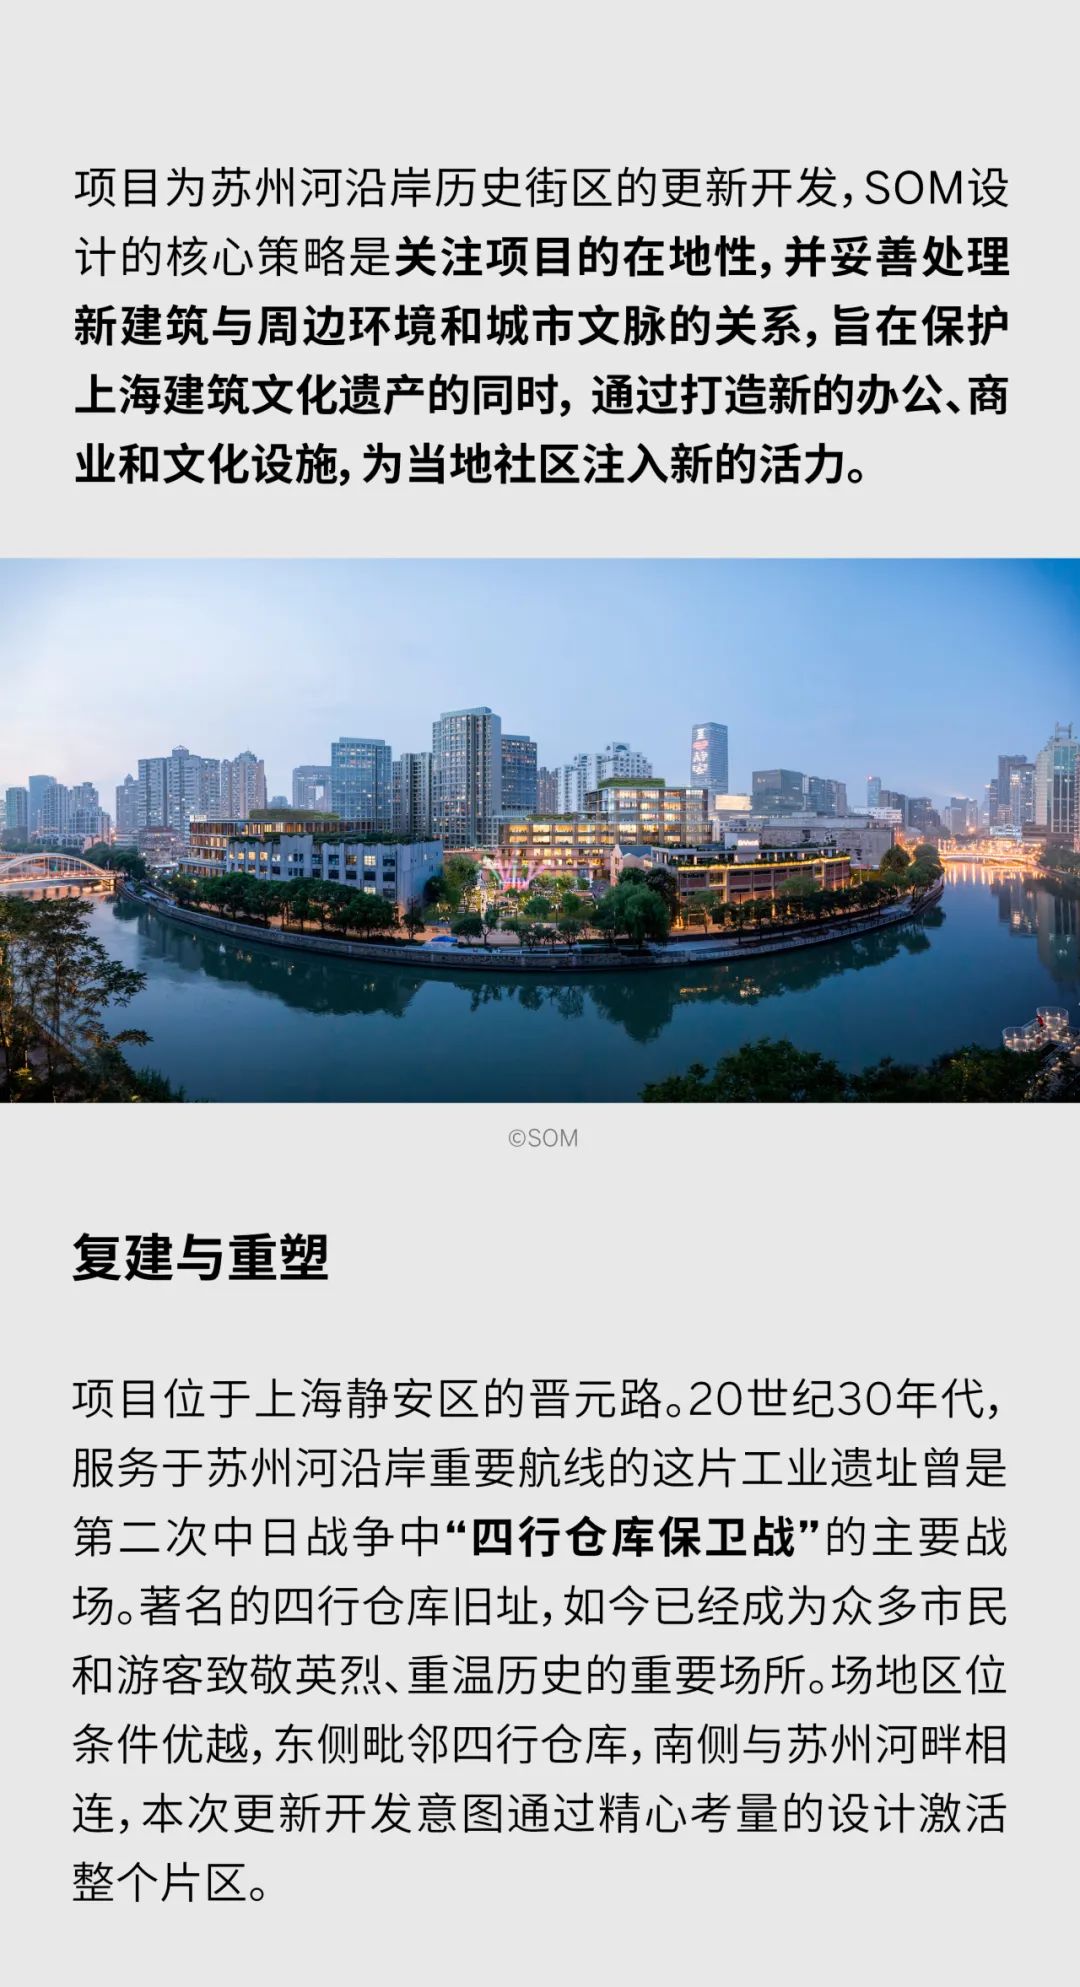 SOM X 城市更新 | 上海晋元路滨水开发项目